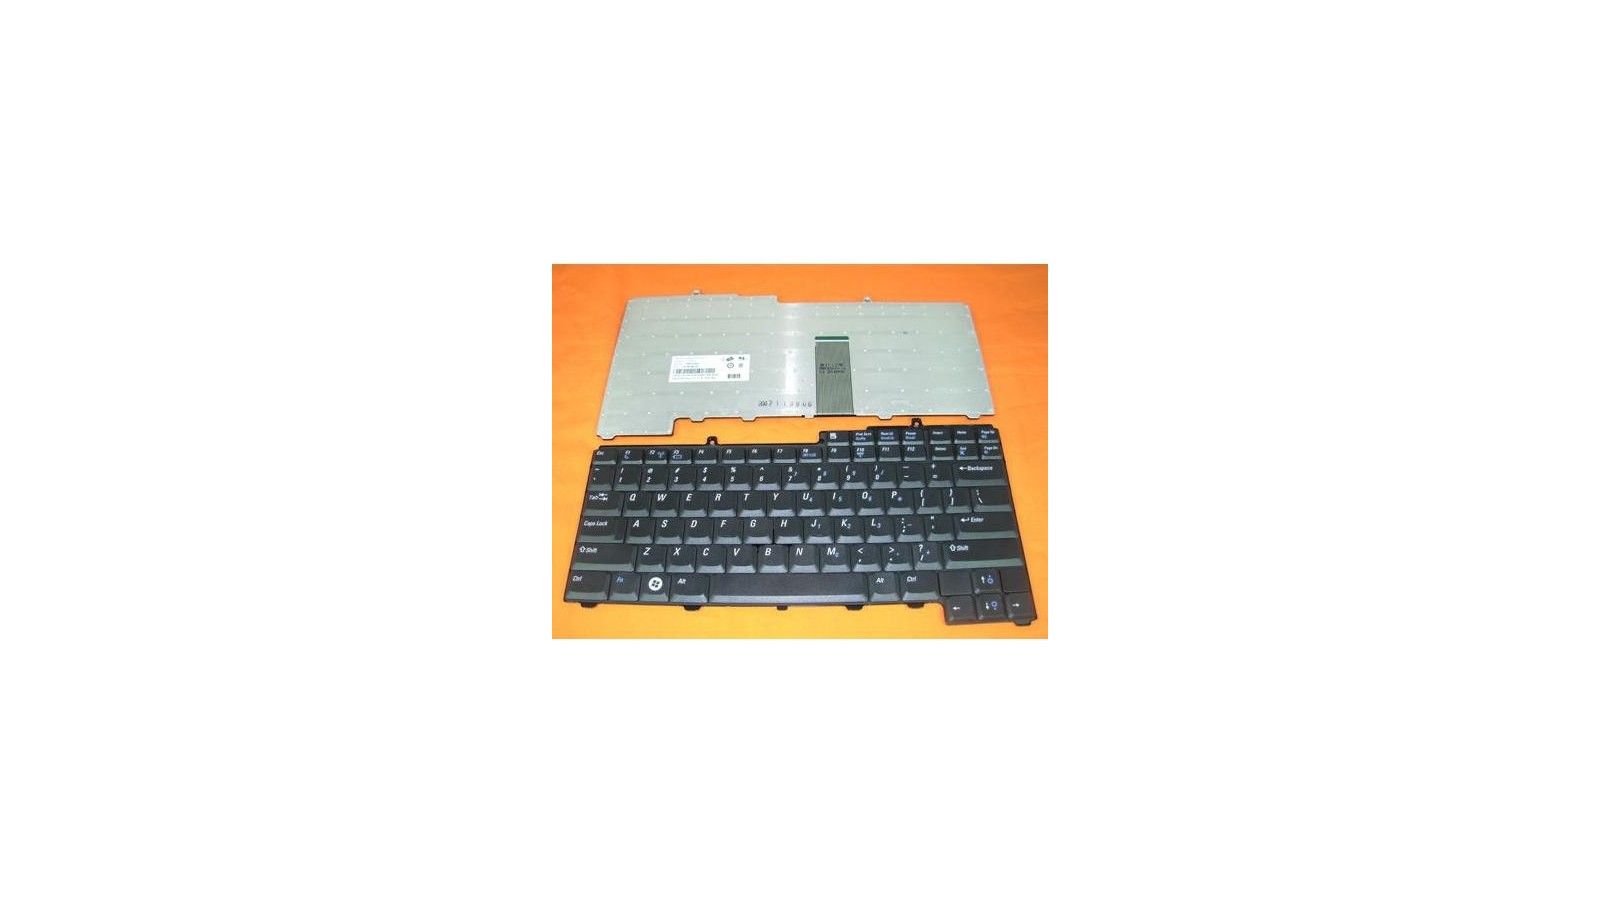 Tastiera nera per notebook Dell Inspiron 1501 E1405 630M 640M 6400 9400